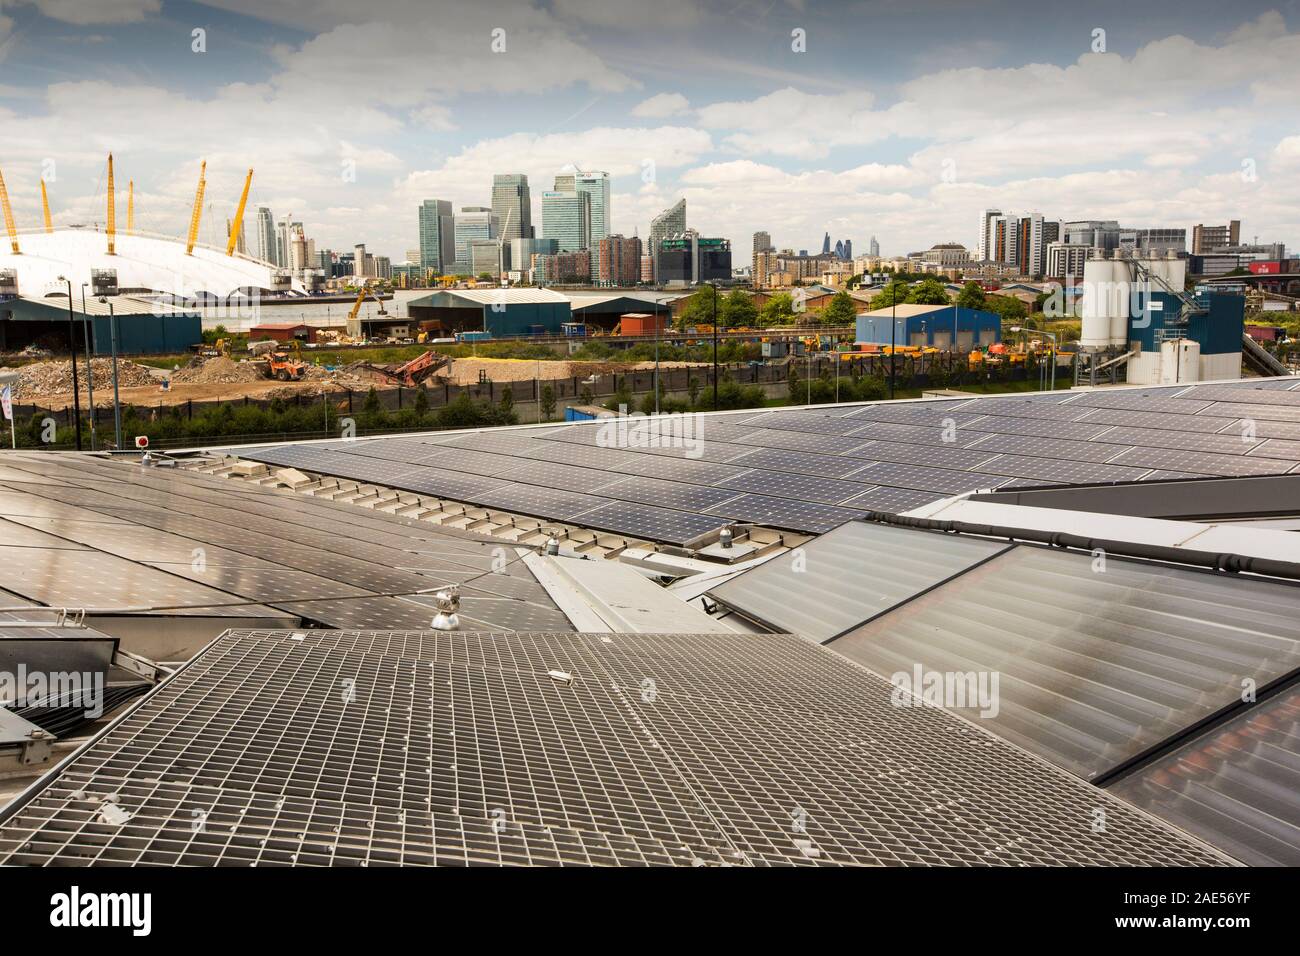 Solarthermie und Photovoltaik Sonnenkollektoren auf dem Dach des Kristalls Gebäude, das ist das erste Gebäude in der Welt eine hervorragende BREEAM (BR zu vergeben. Stockfoto